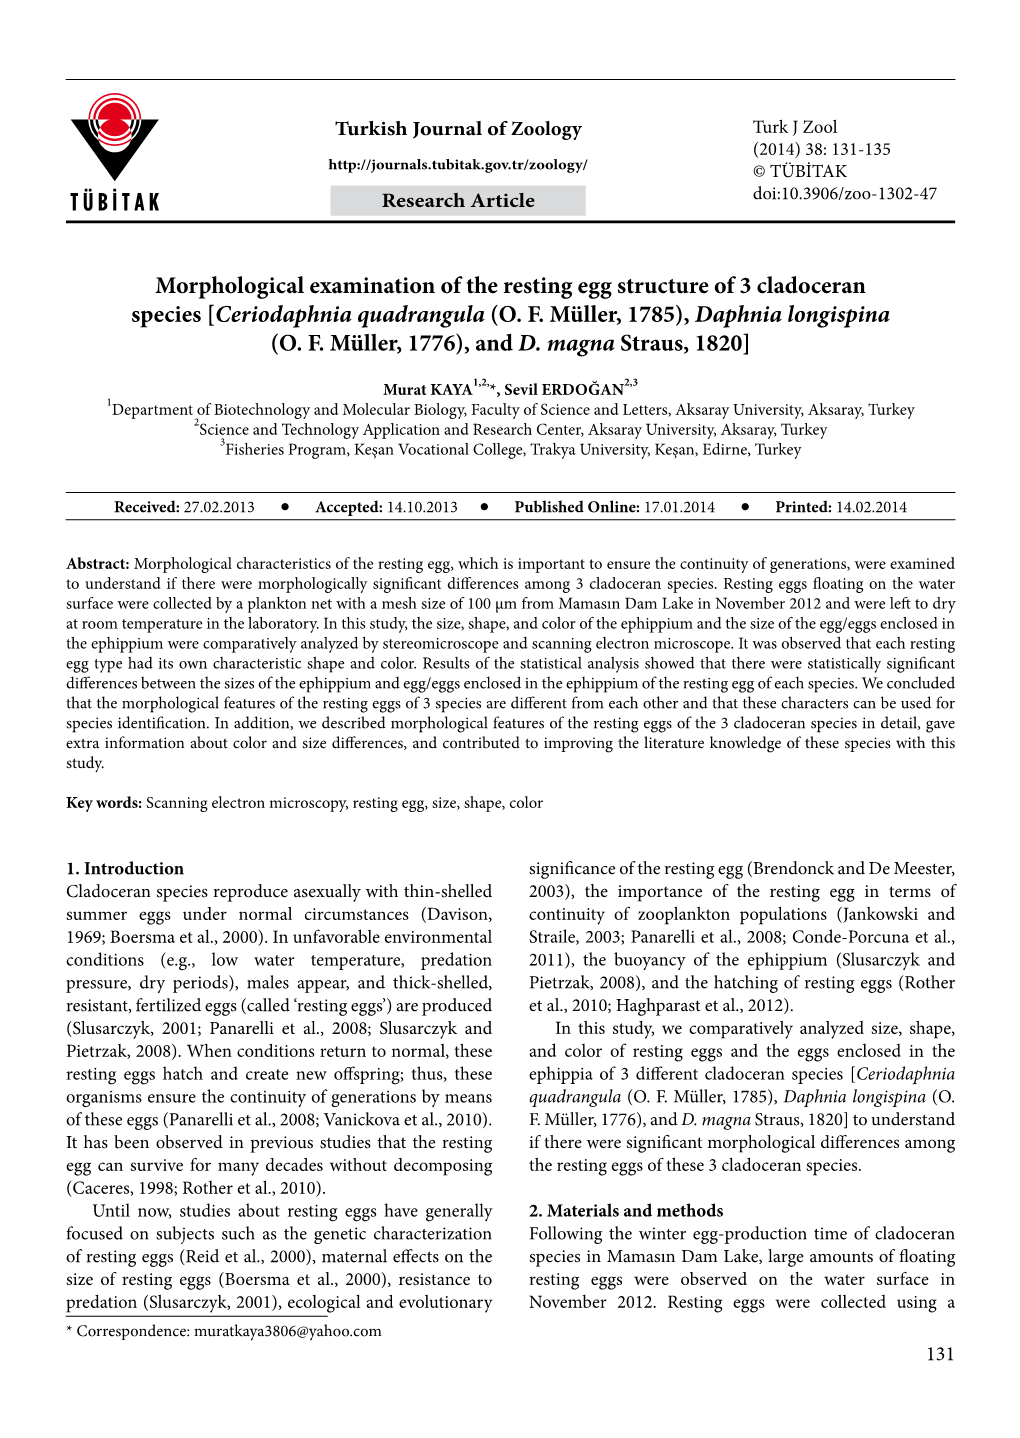 Morphological Examination of the Resting Egg Structure of 3 Cladoceran Species [Ceriodaphnia Quadrangula (O